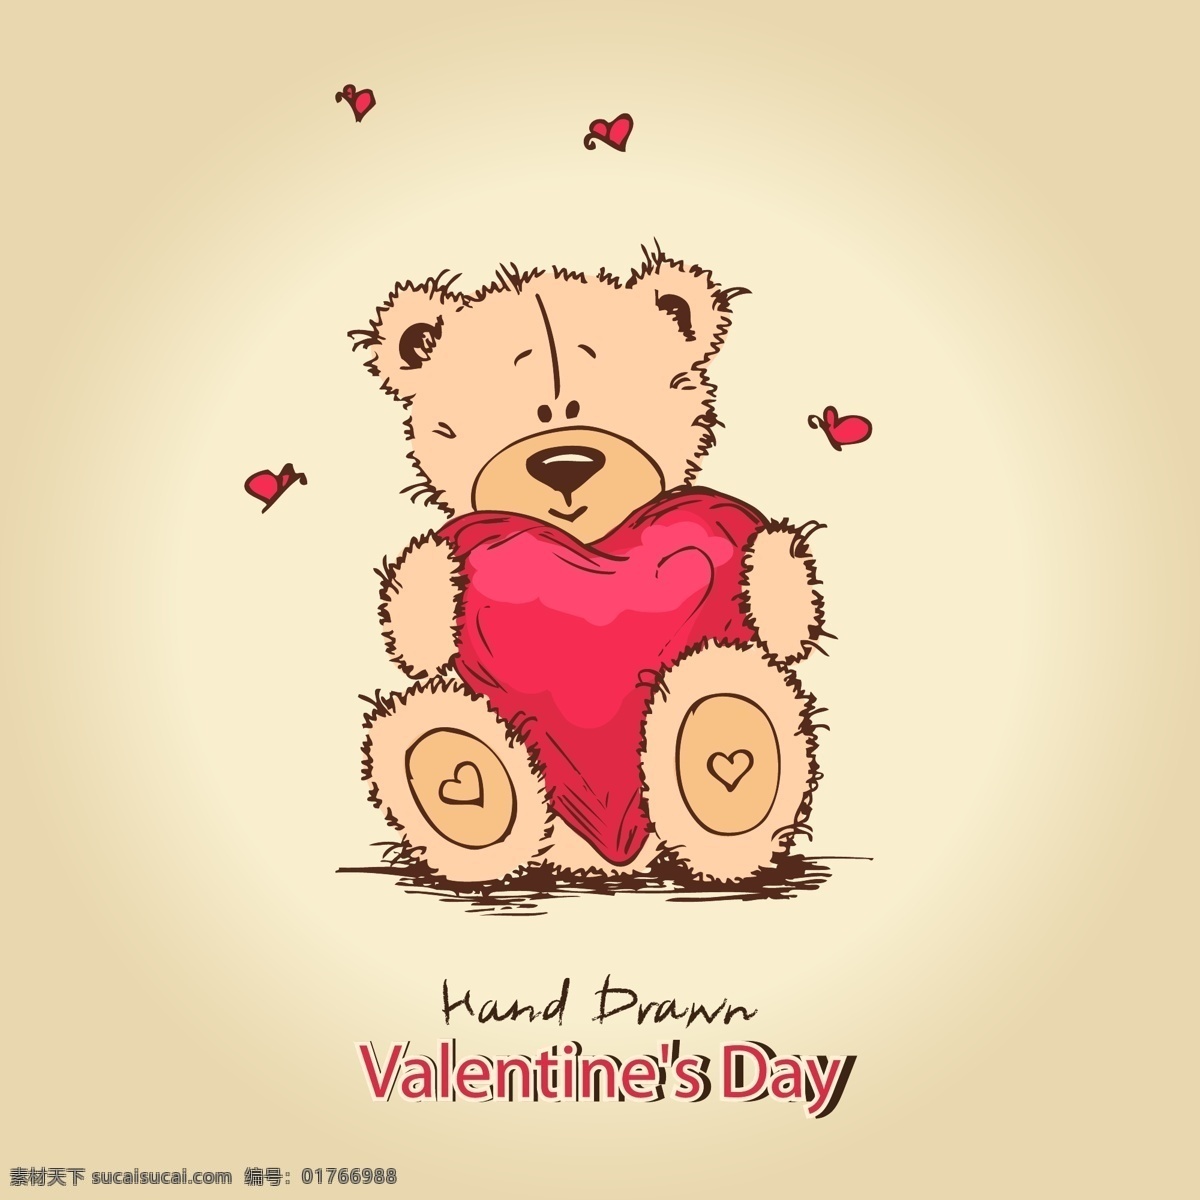 可爱 泰迪 熊 背景 矢量 day 爱心 卡通 模板 设计稿 手绘 素材元素 泰迪熊 线描 图案 valentines 源文件 矢量图